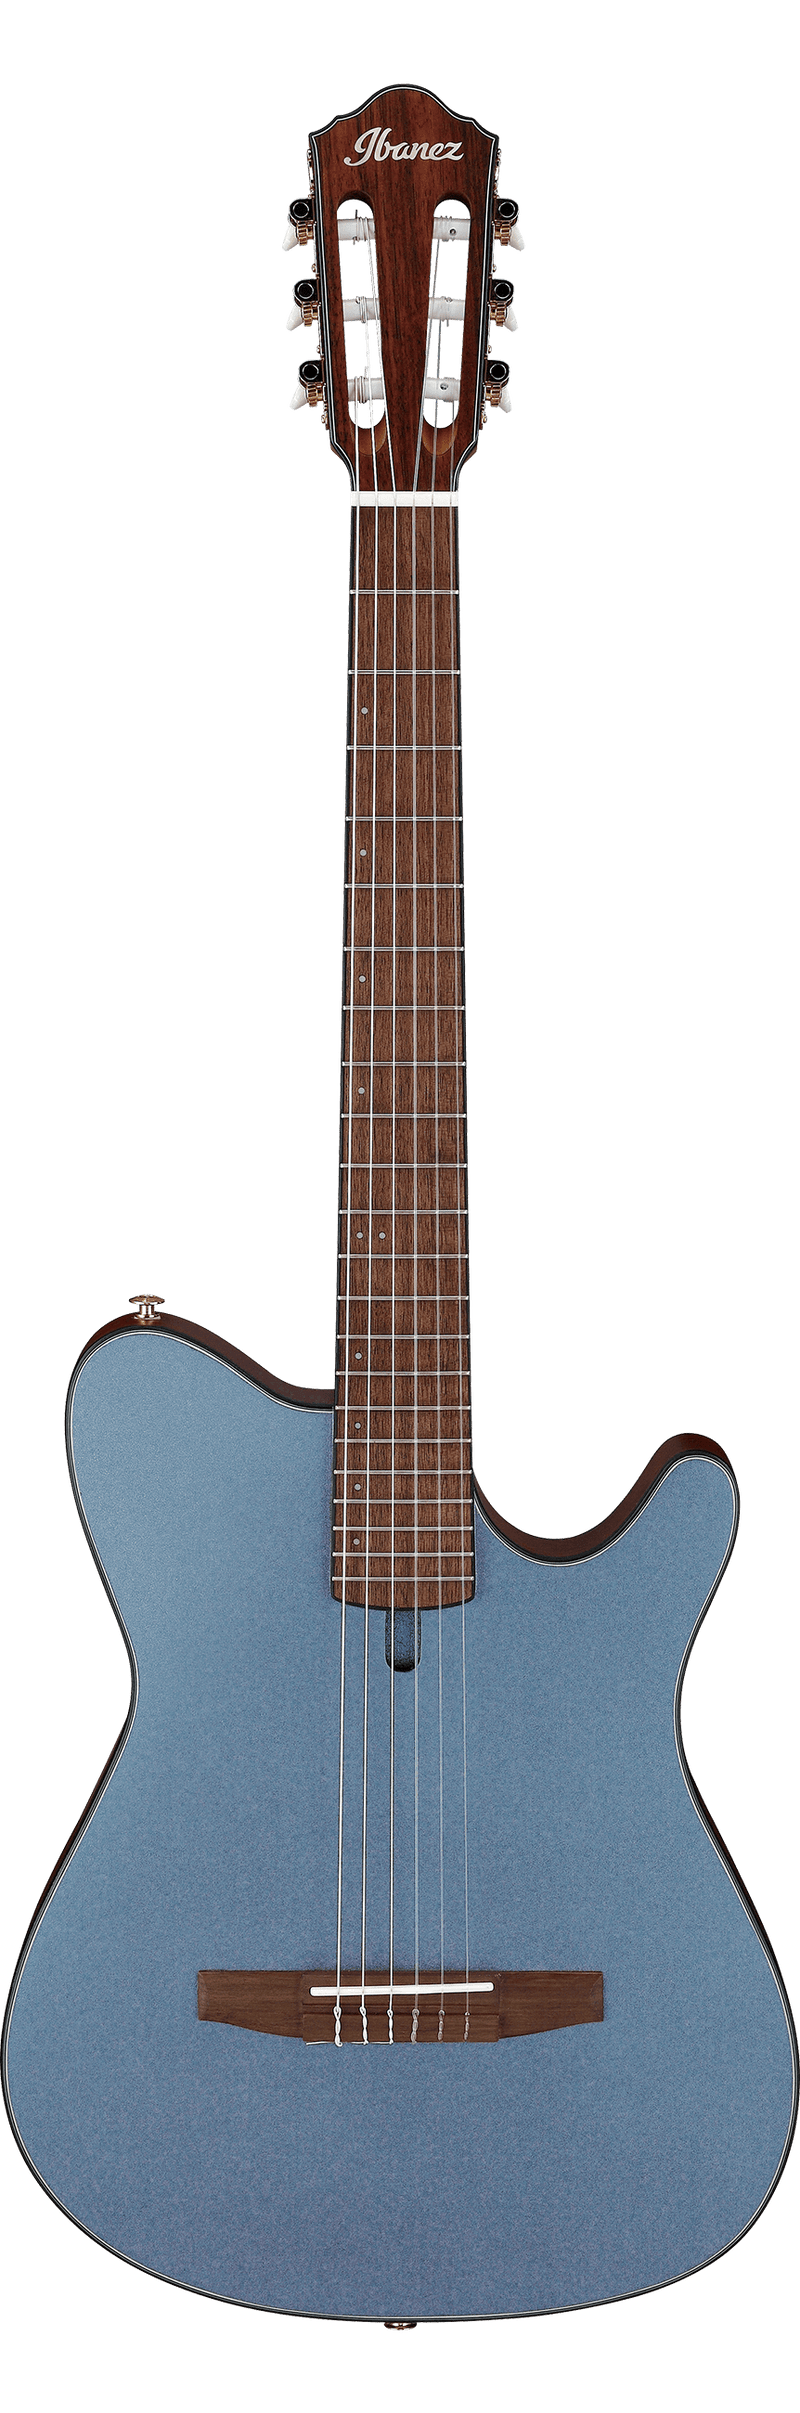 Guitare acoustique ibanez frh10n (plat métallique bleu indigo)